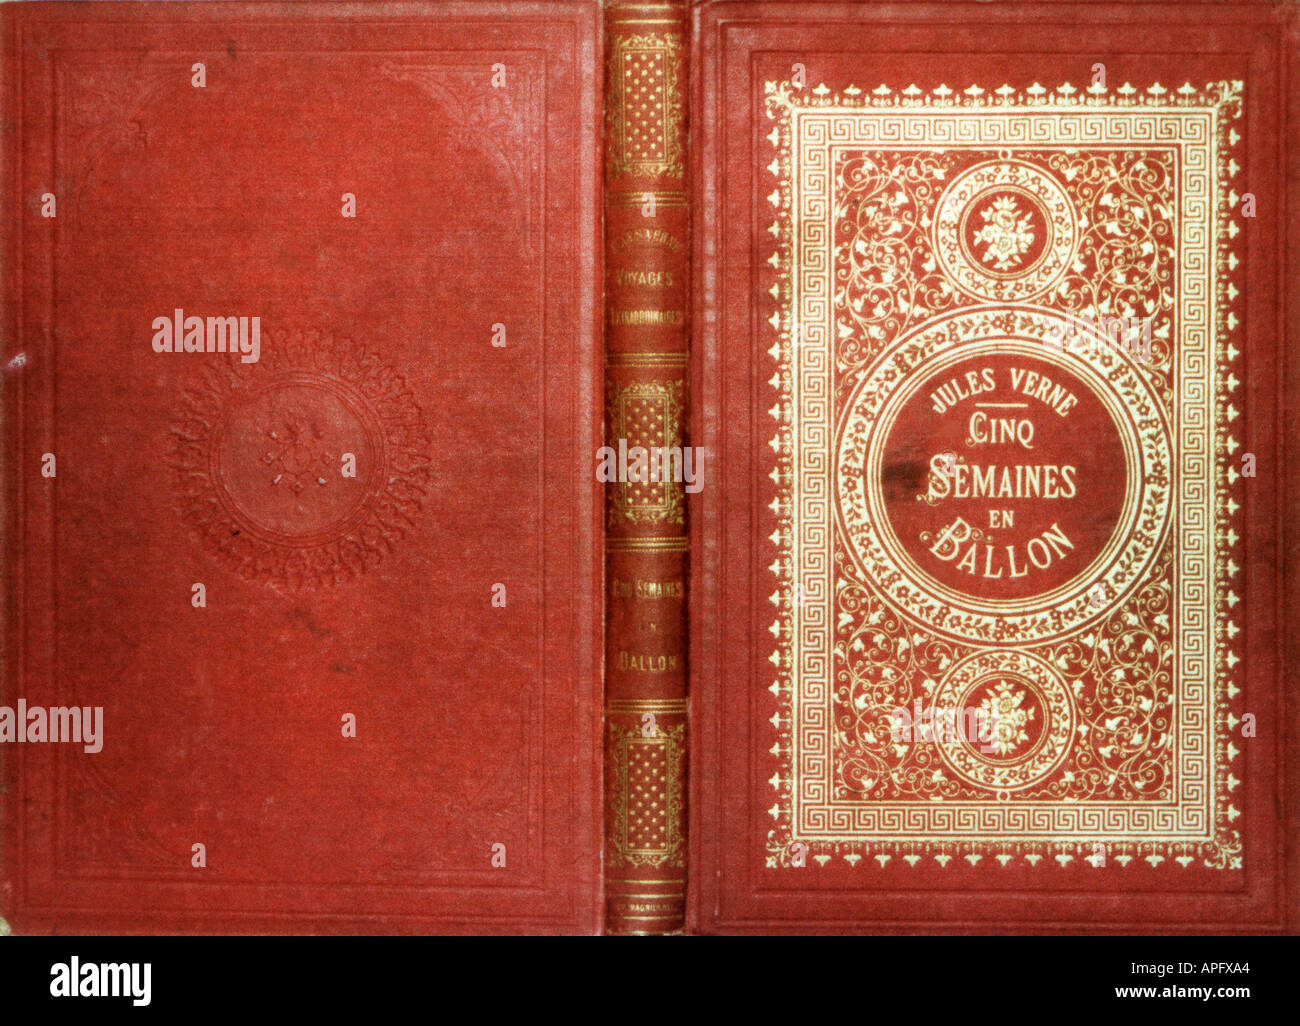 Cinq semaines en ballon Jules Verne Couverture Stock Photo - Alamy